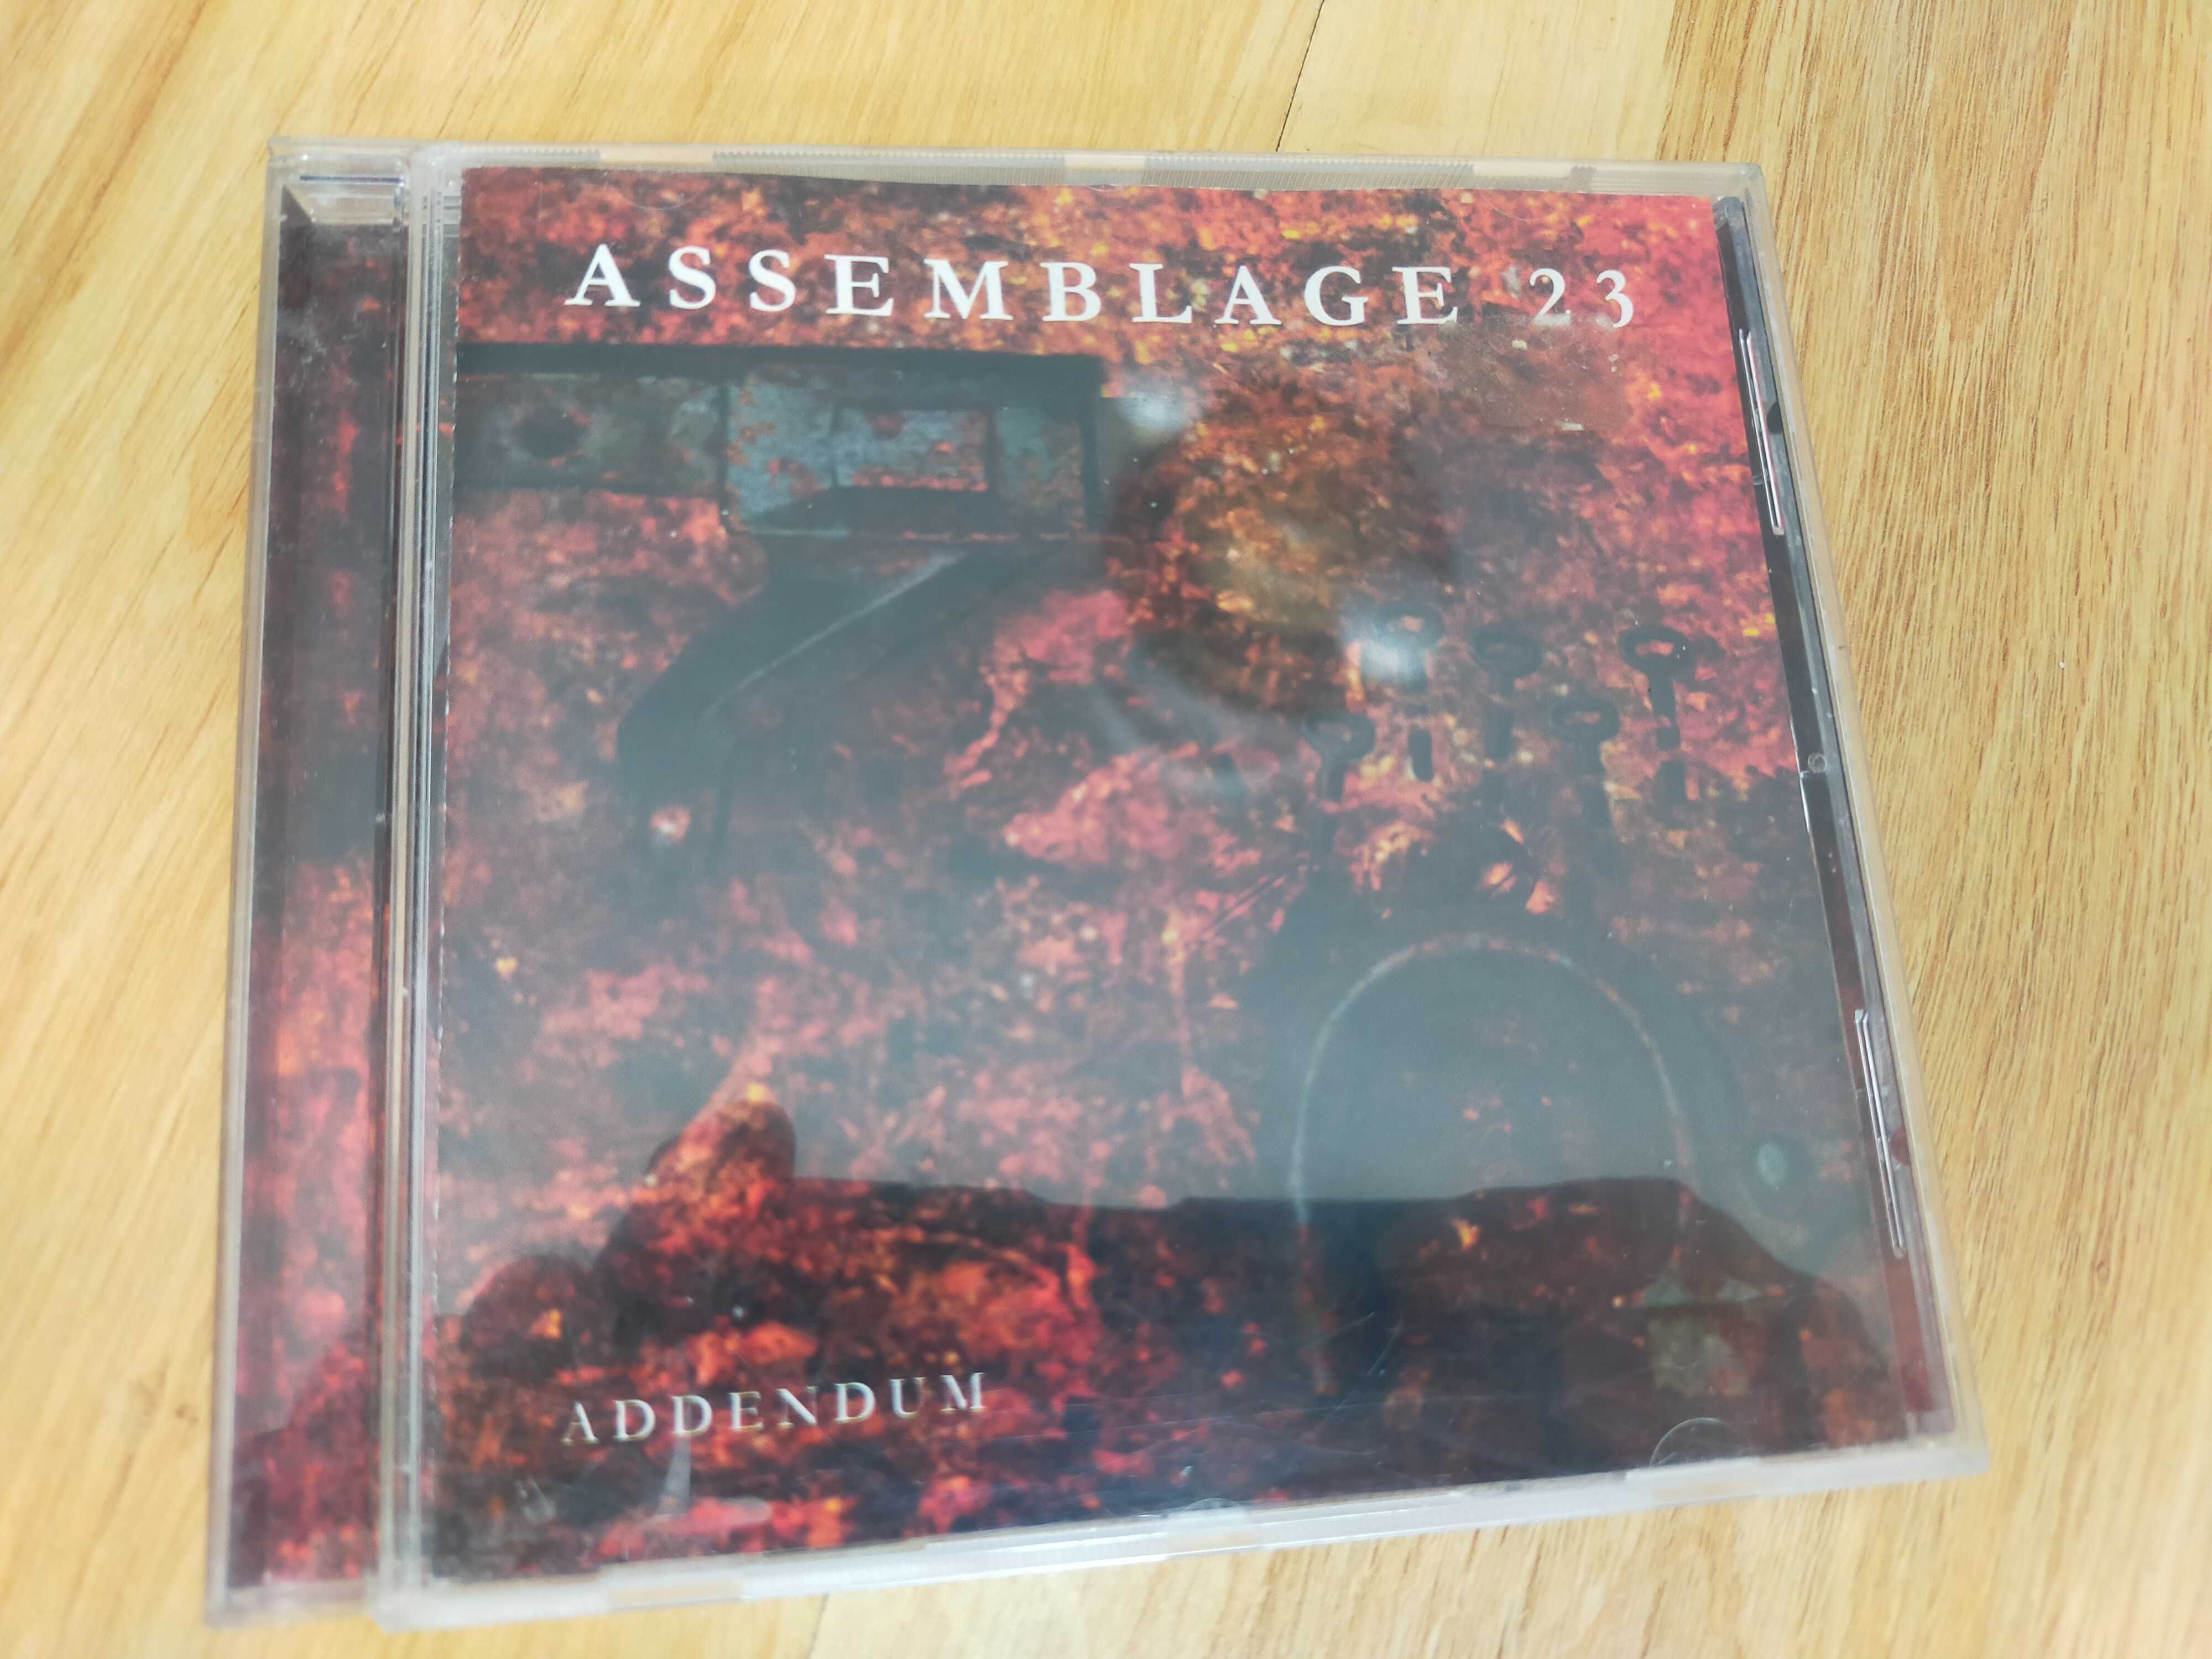 ASSEMBLAGE 23 "ADDENUM" CD. Jak nowa !!!